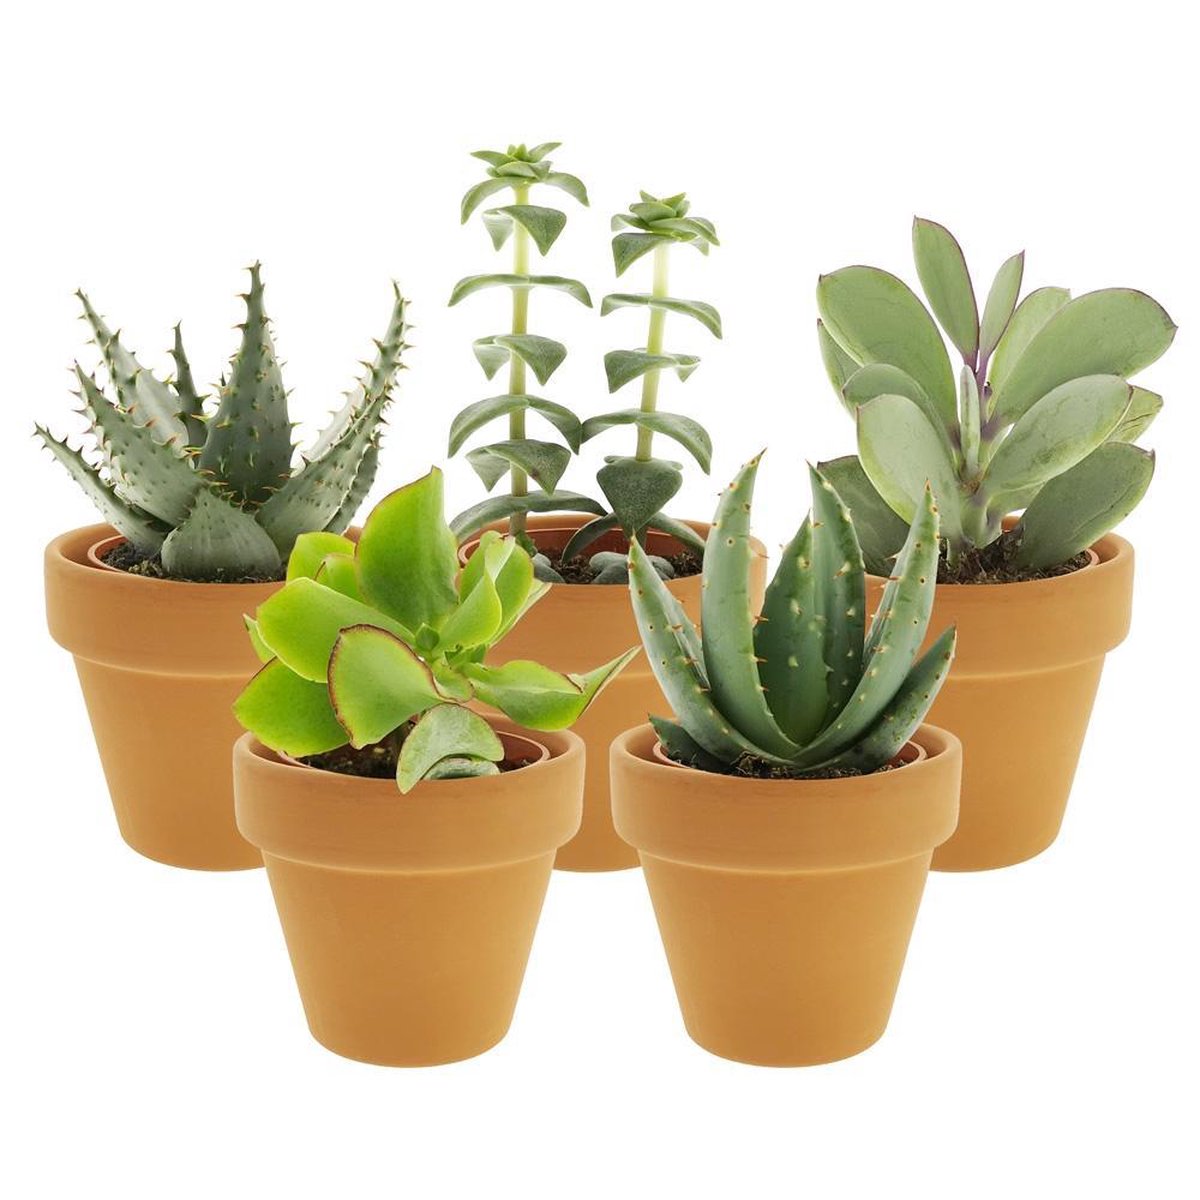 Desertworld Mini Vetplantjes in potjes - 5 stuks - Ø 6 cm - Hoogte 8-15 cm bol.com